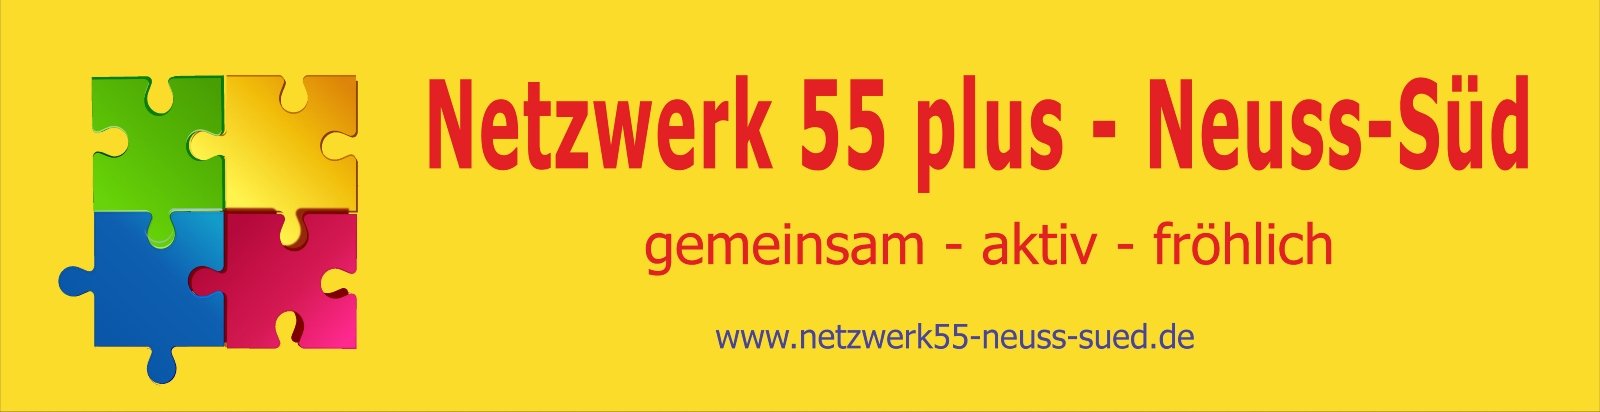 Banner netzwerk-001